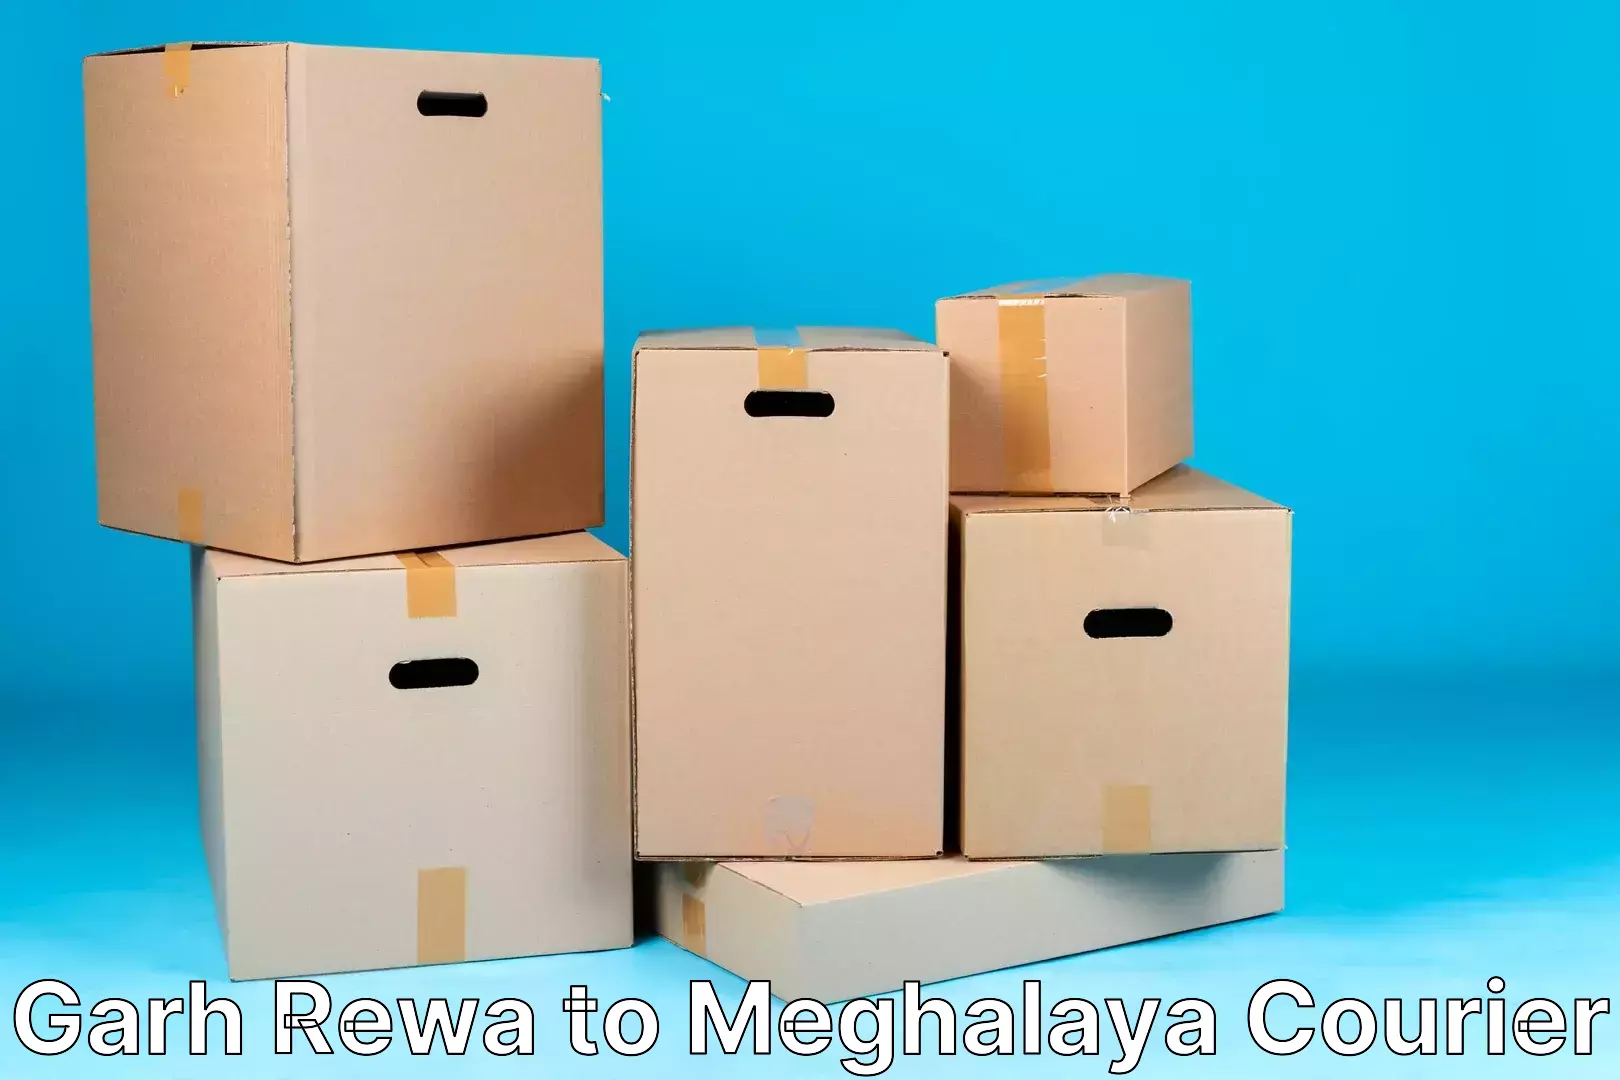 Efficient shipping platforms Garh Rewa to Meghalaya